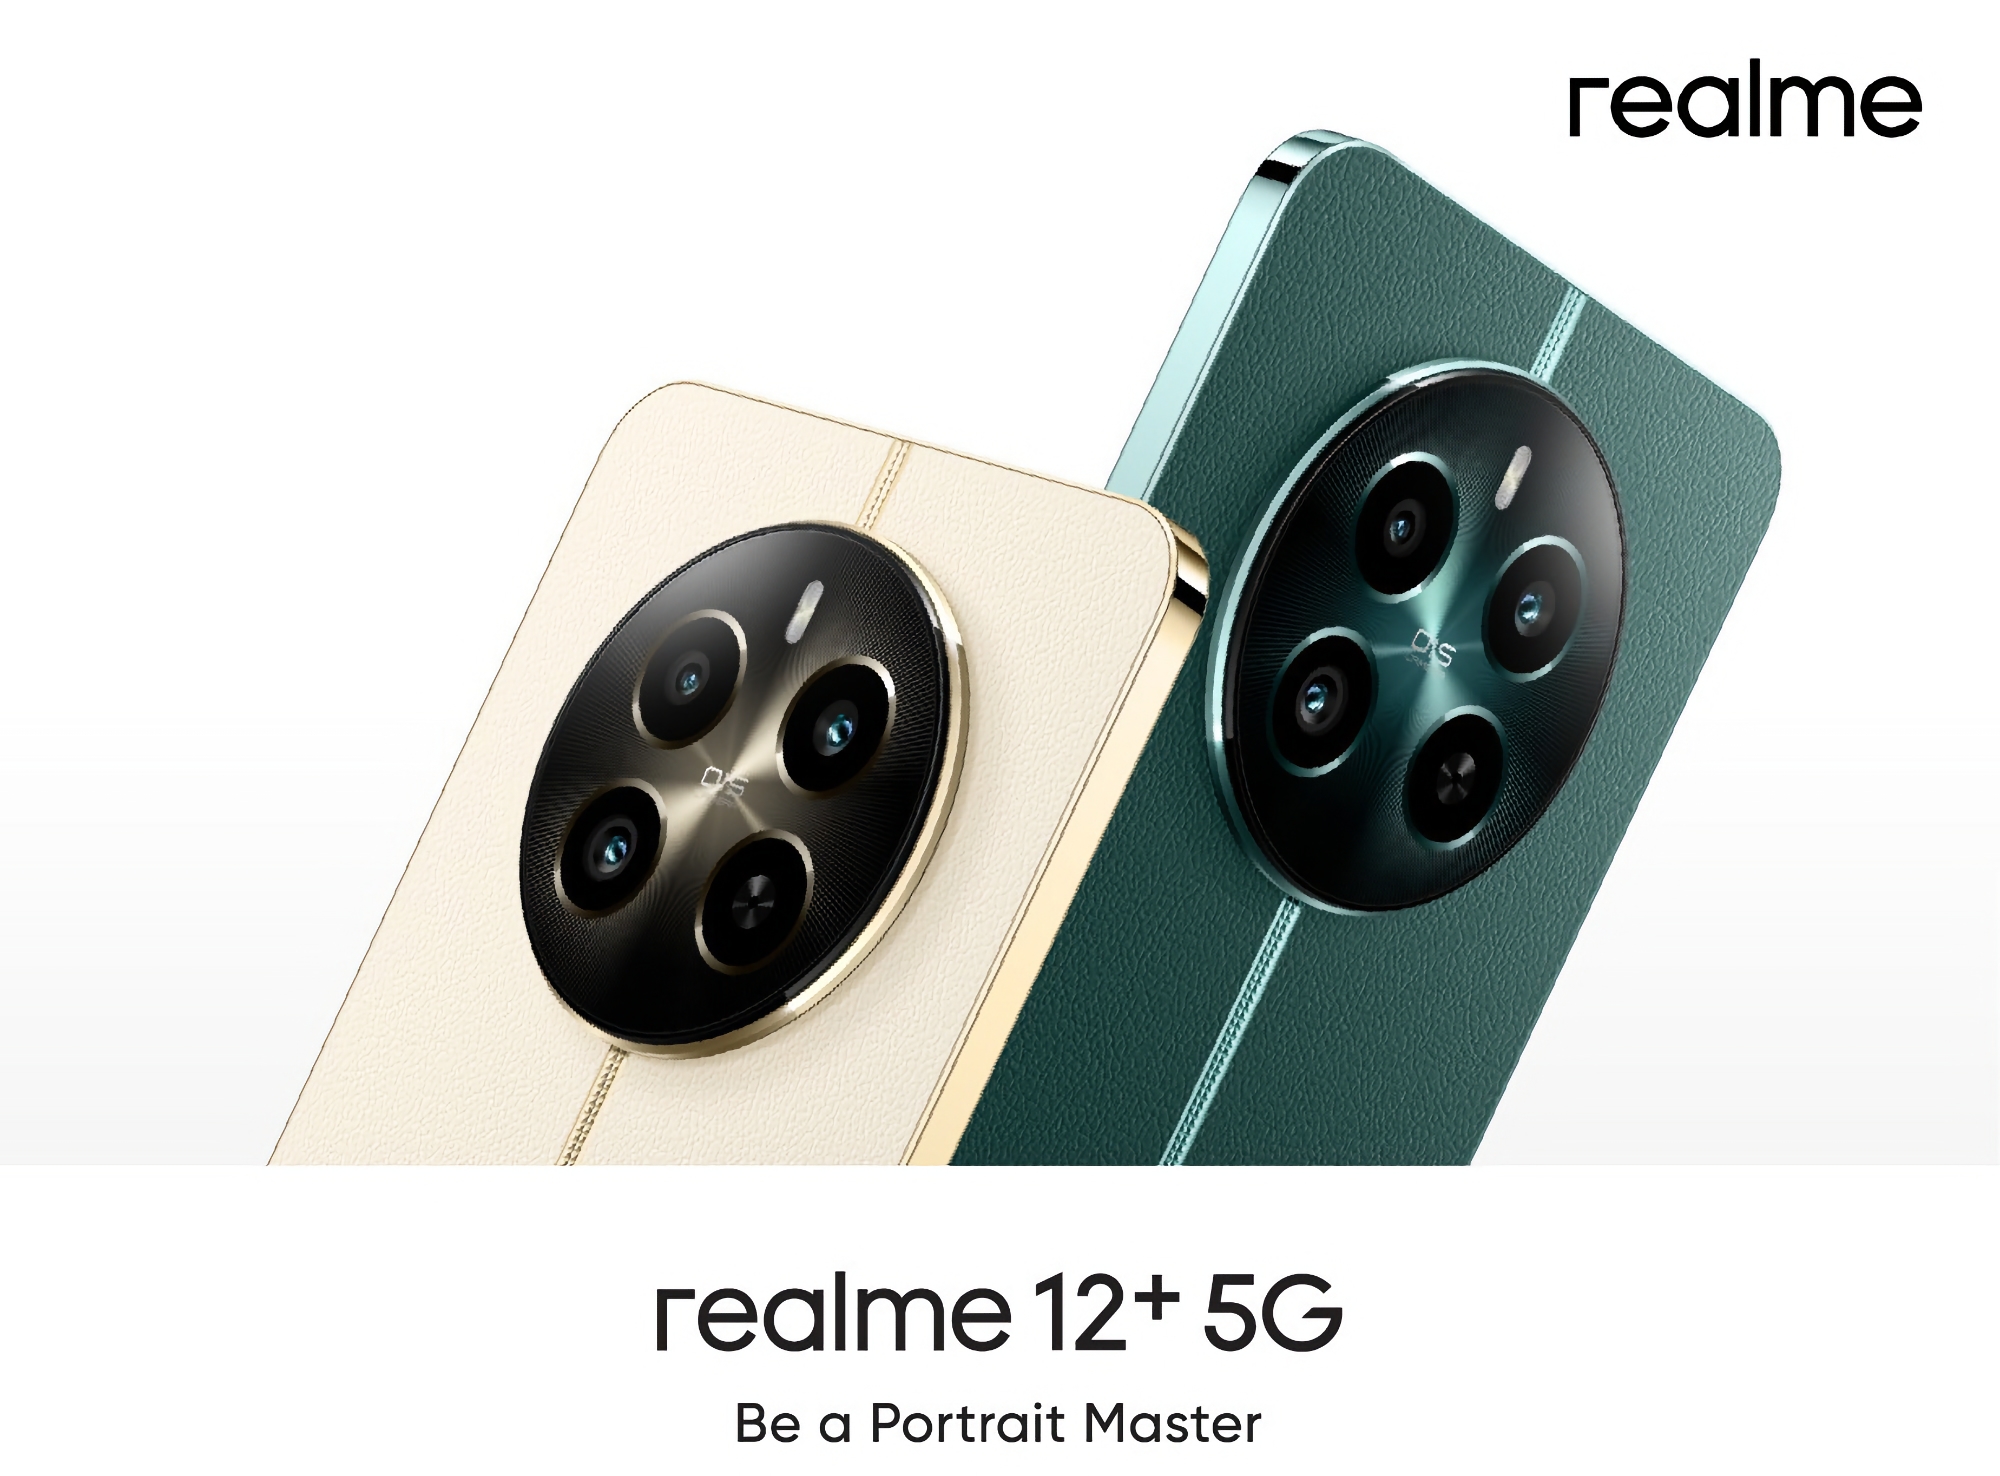 Sådan kommer Realme 12+ 5G til at se ud: en smartphone med en 120Hz AMOLED-skærm, en Dimensity 7050-chip og et 50 MP-kamera.